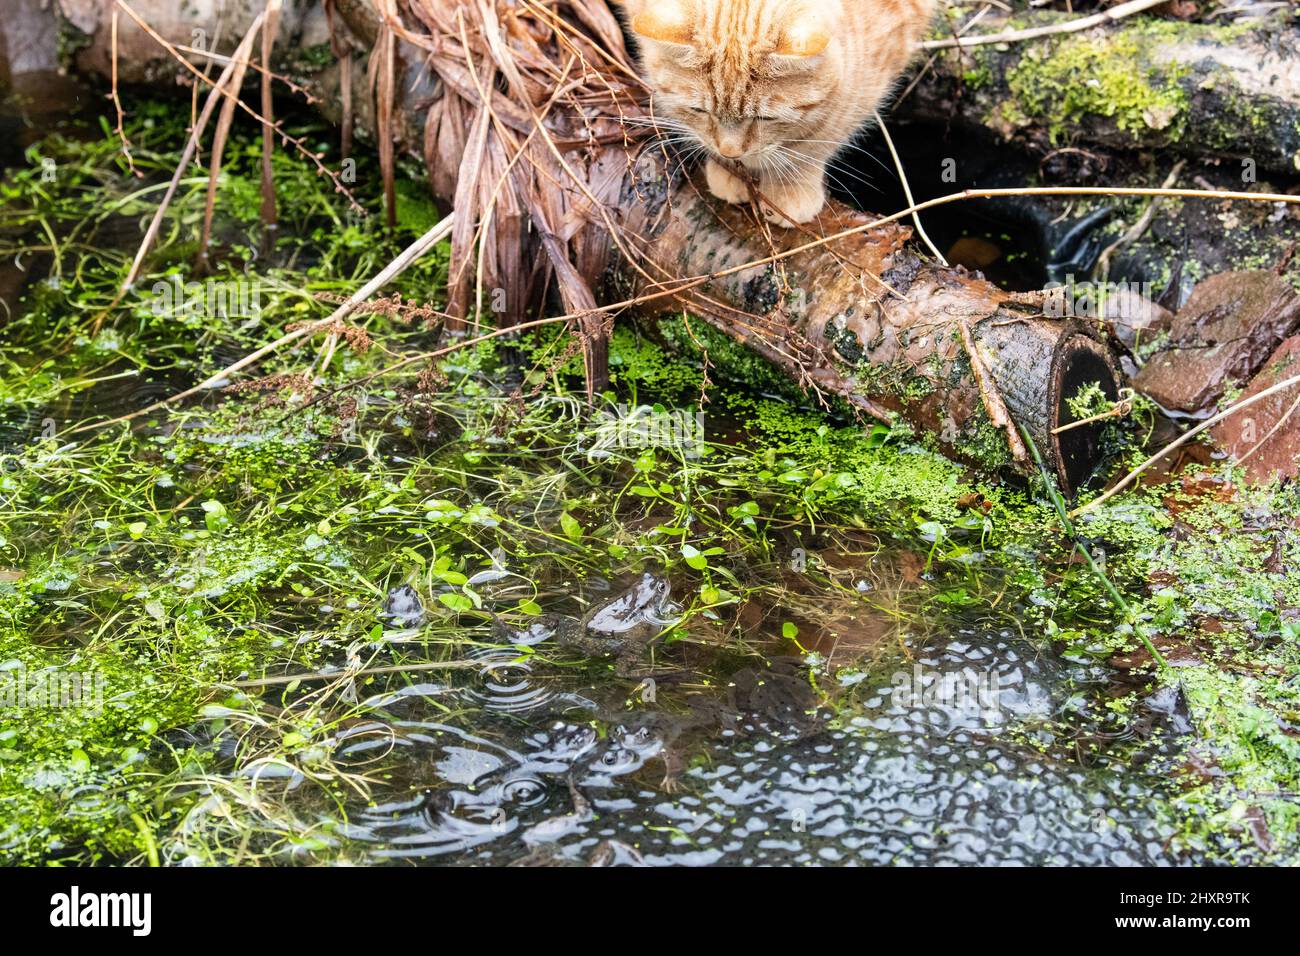 Stirling, Schottland, Großbritannien. 14. März 2022. Wetter in Großbritannien - eine Katze wartete darauf, dass sich ein Frosch nahe genug wagt, um ihn bei einem Regenschauer in einem Stirling-Garten zu fangen.Quelle: Kay Roxby/Alamy Live News Stockfoto